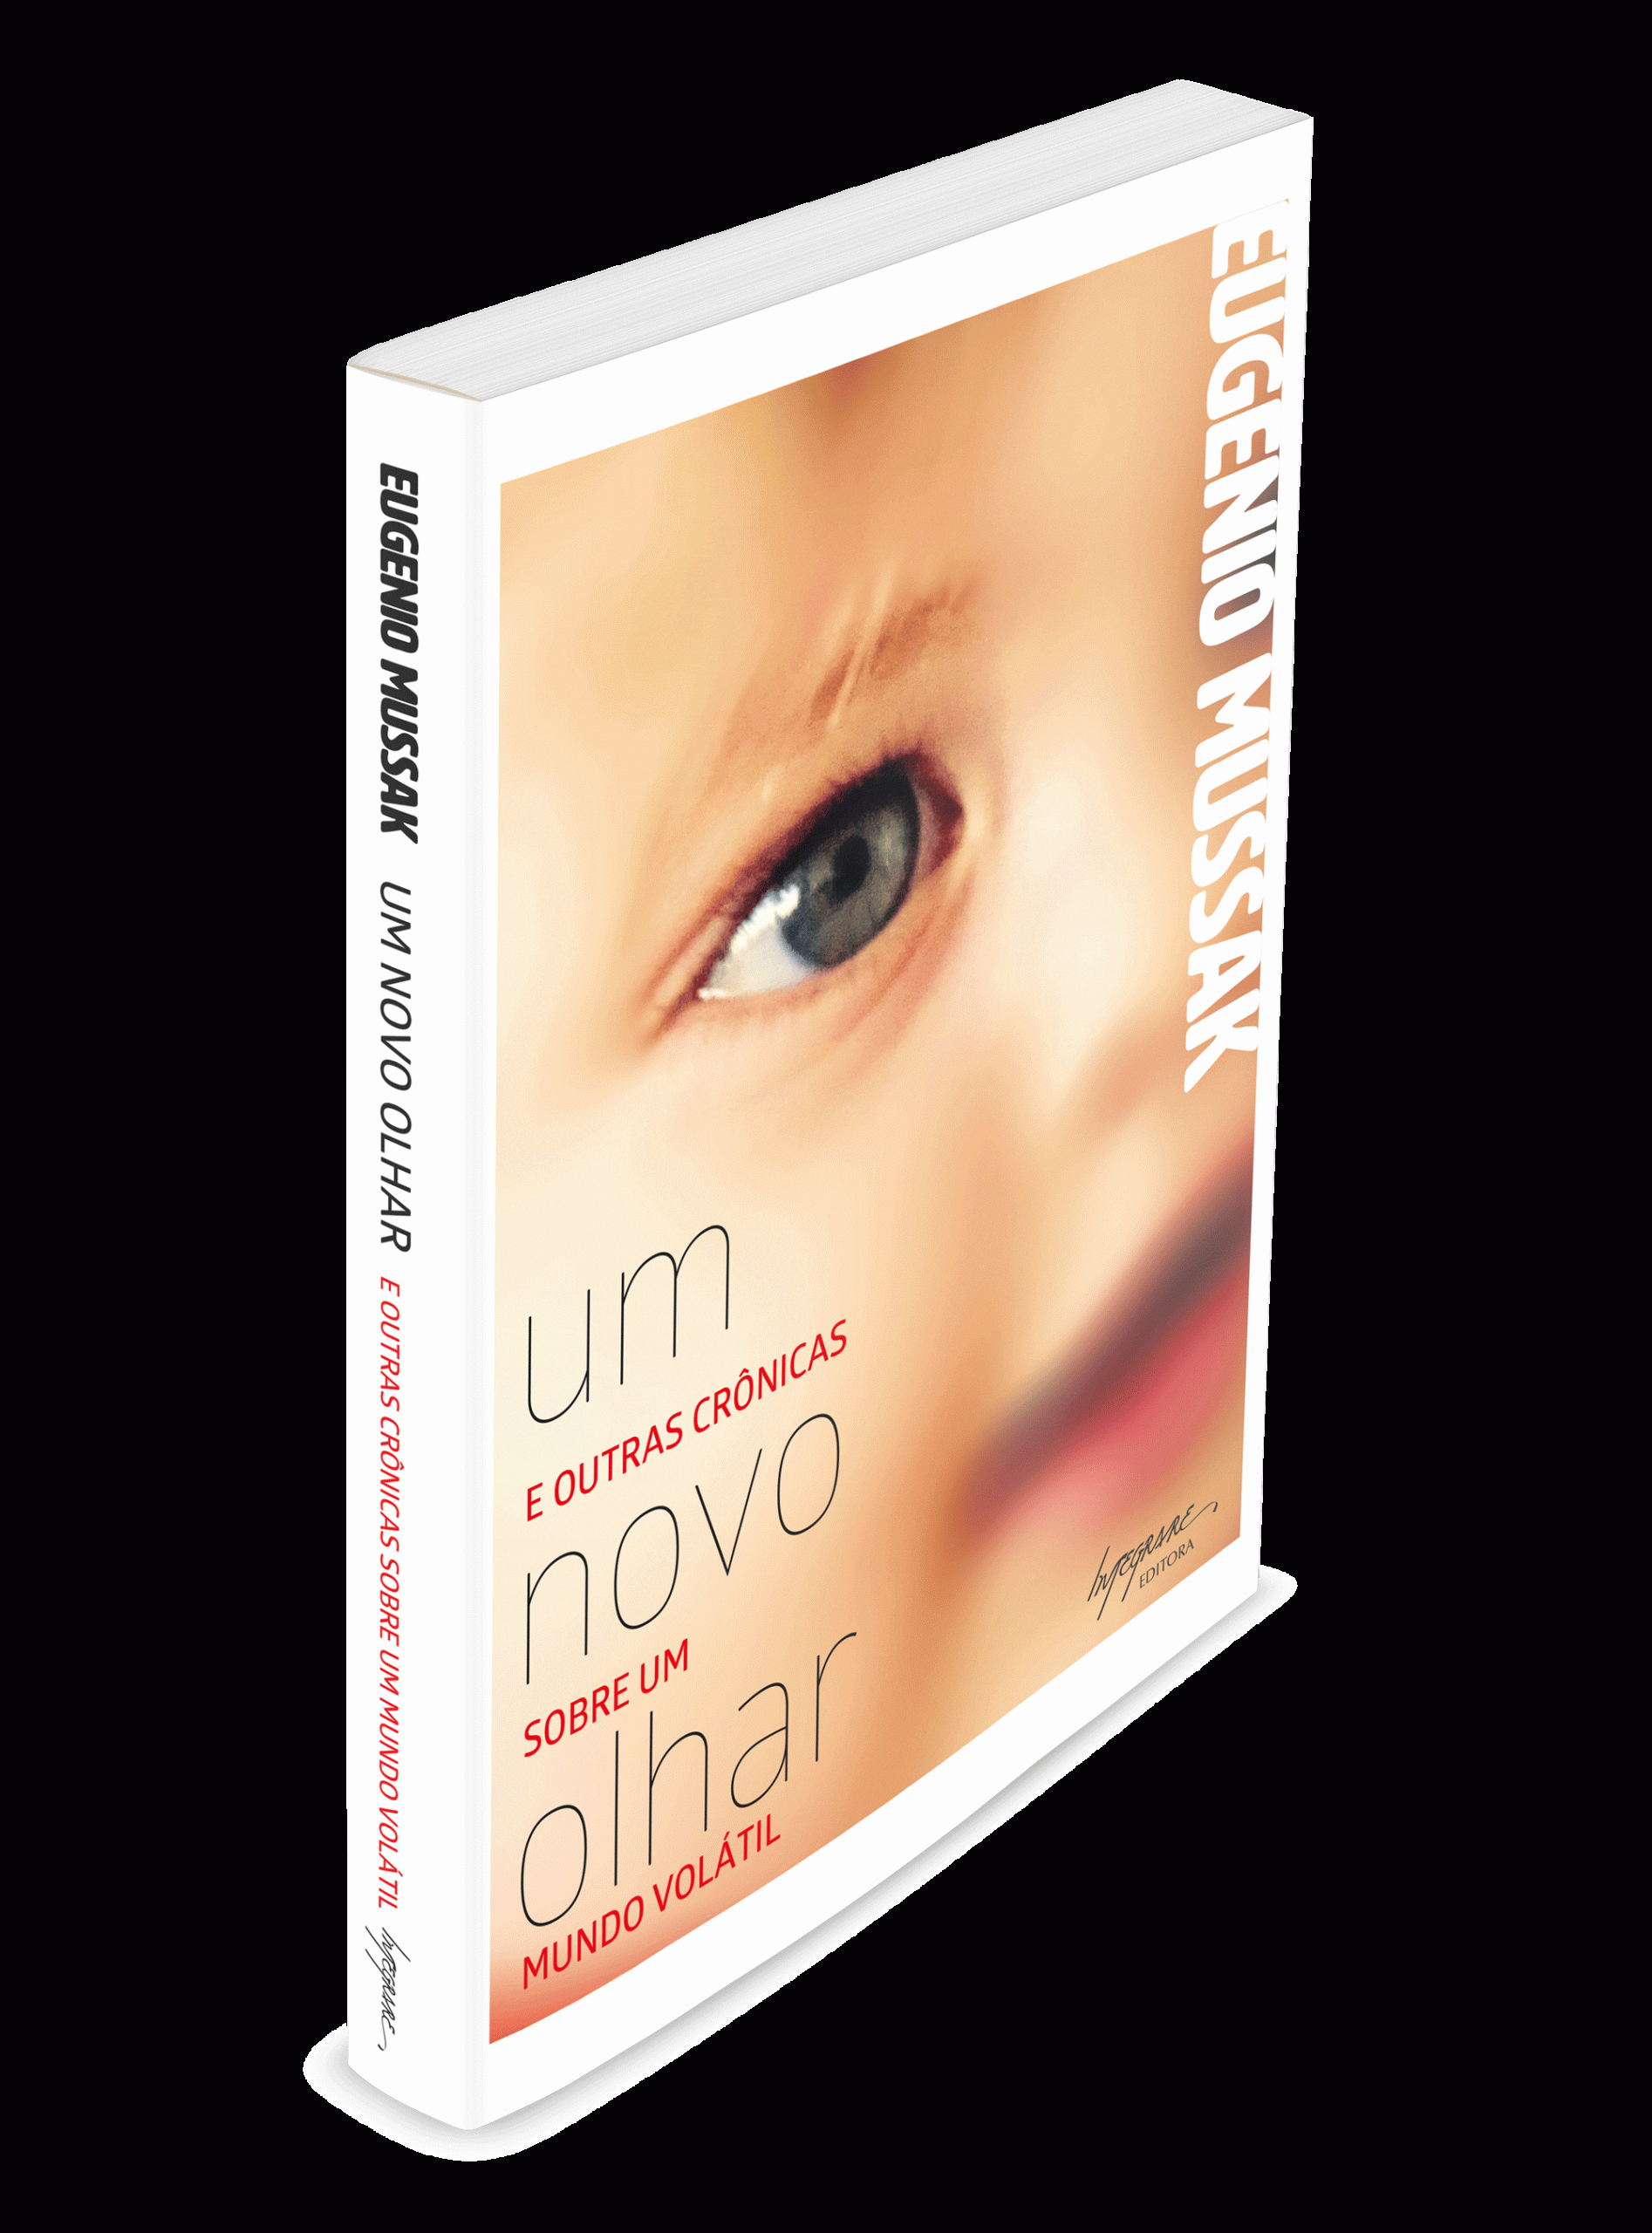 Capa do livro "Um Novo Olhar" de Eugenio Mussak para a Editora Integrare.